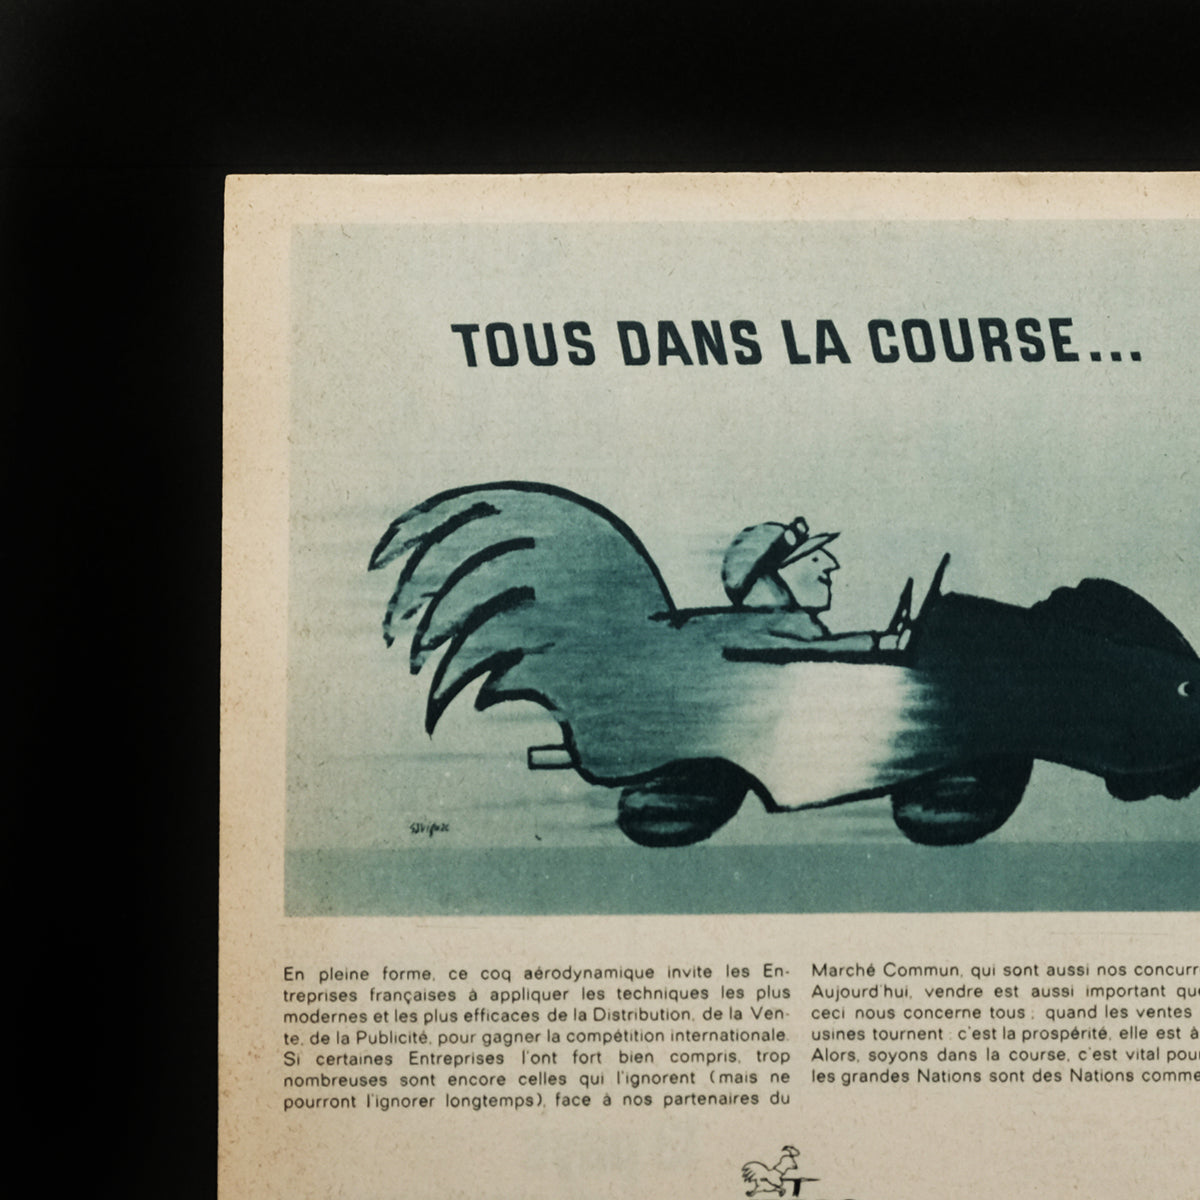 「古くに描かれた絵図展」フランス ヴィンテージ広告 / レイモン・サヴィニャック